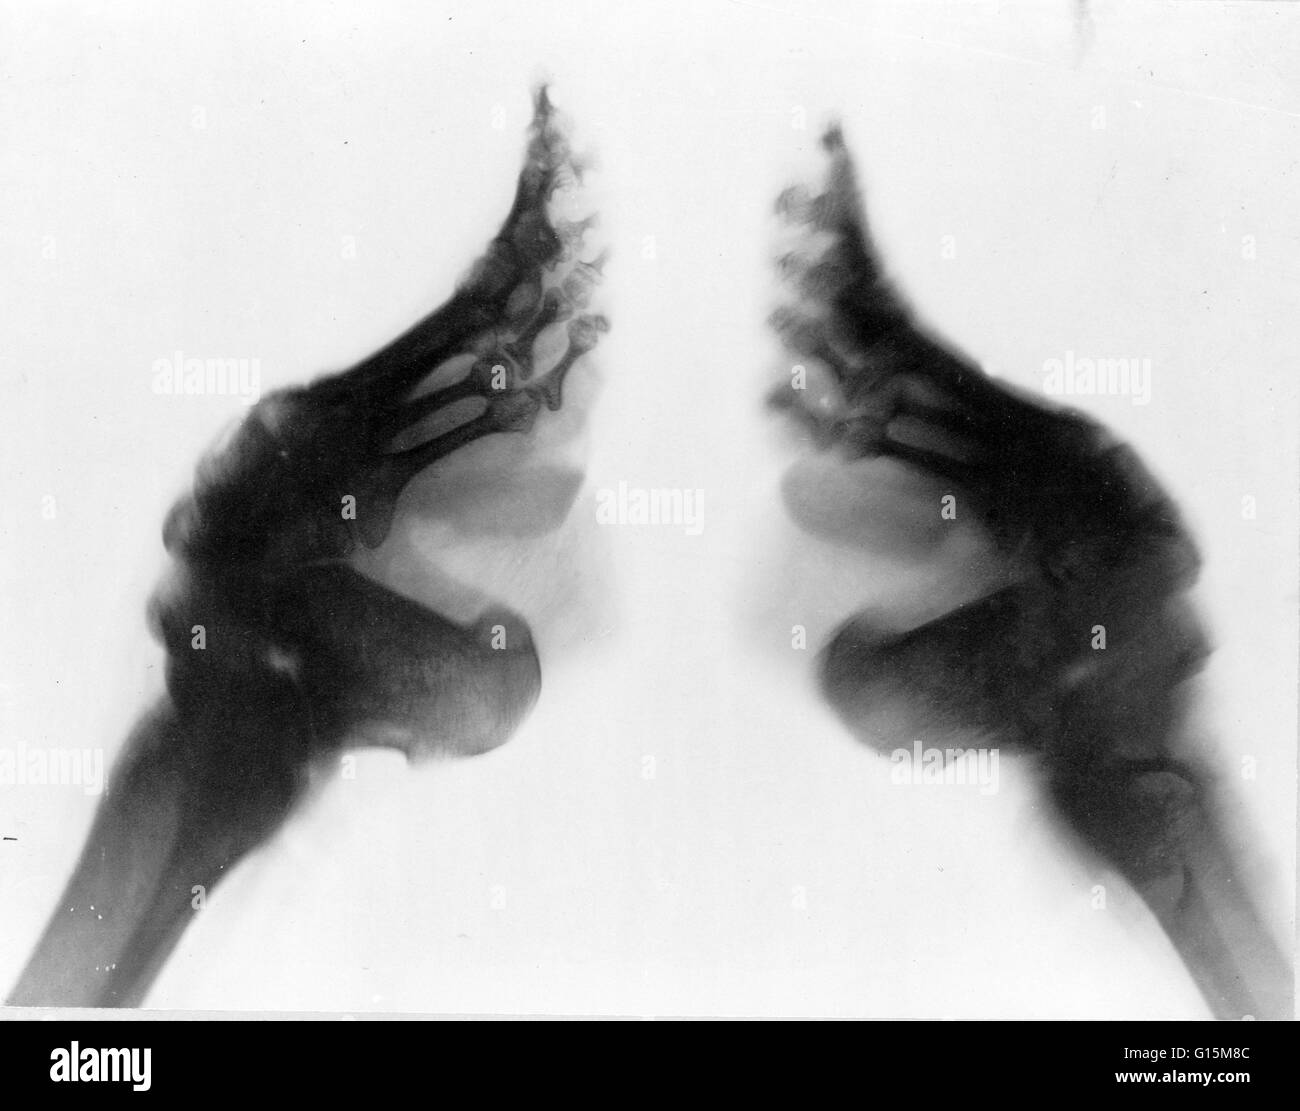 X-ray gefesselten Füße, China, zwischen 1890 und 1923. Fußbindens war der Brauch der Bindung die Füße junger Mädchen schmerzhaft fest, um weiteres Wachstum zu verhindern. Die kleine schmale Füße wurden als schön und machen eine Frau Bewegungen mehr feminin und d Stockfoto